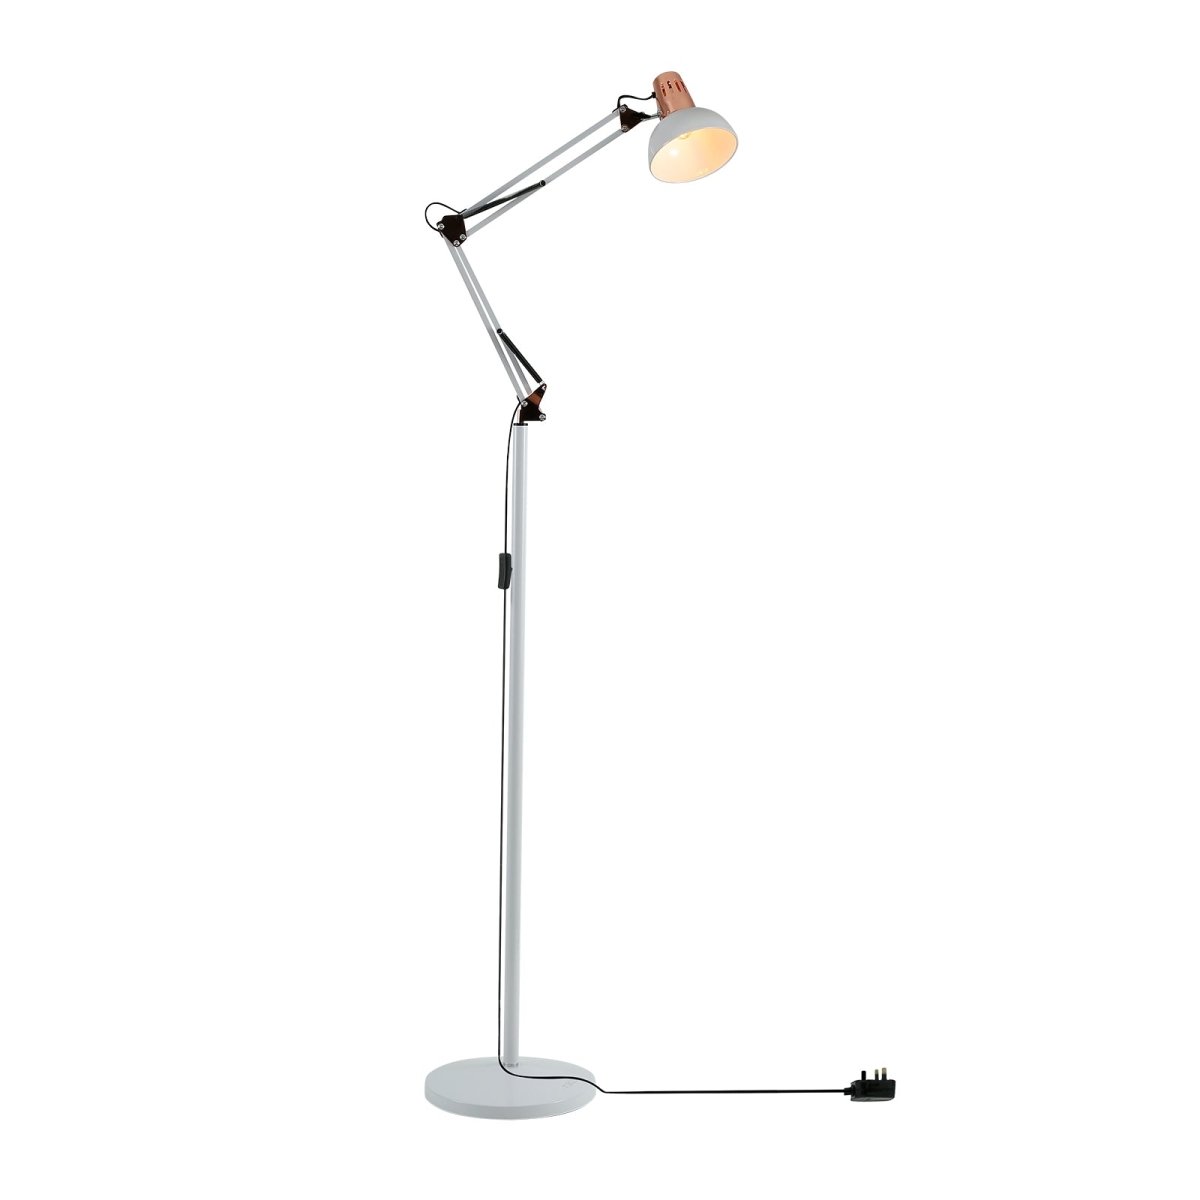 Main image of Swing Arm Architect Model Floor Lamp E27 White and Copper | TEKLED 130-03347